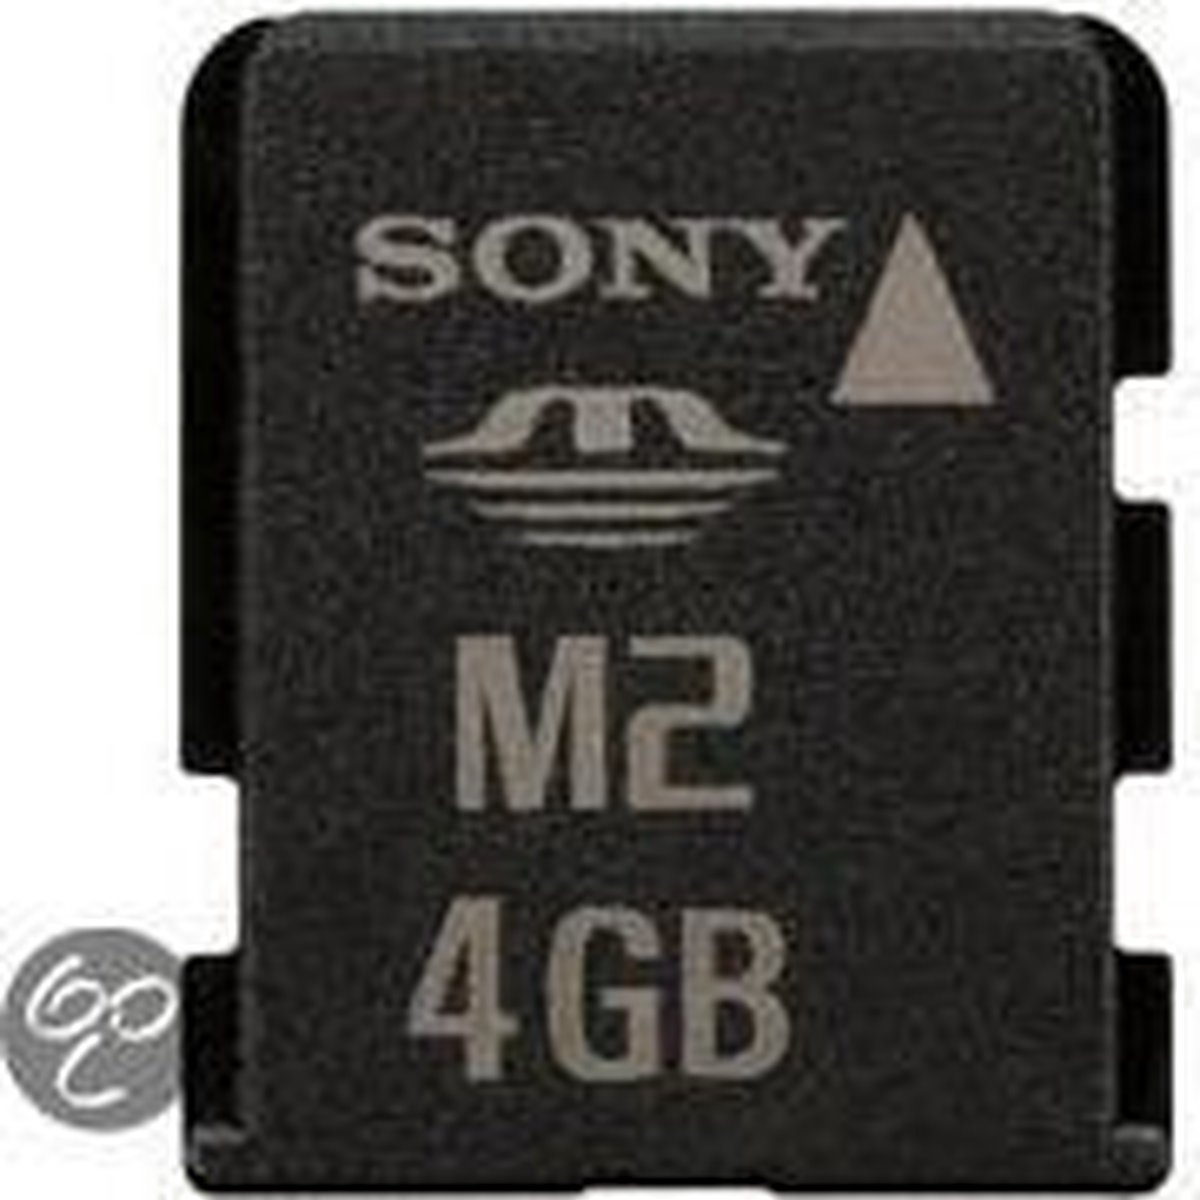 Sony MSA-4G U2 Memory Stick Micro 4GB inkl. USB-Adapter - Sony